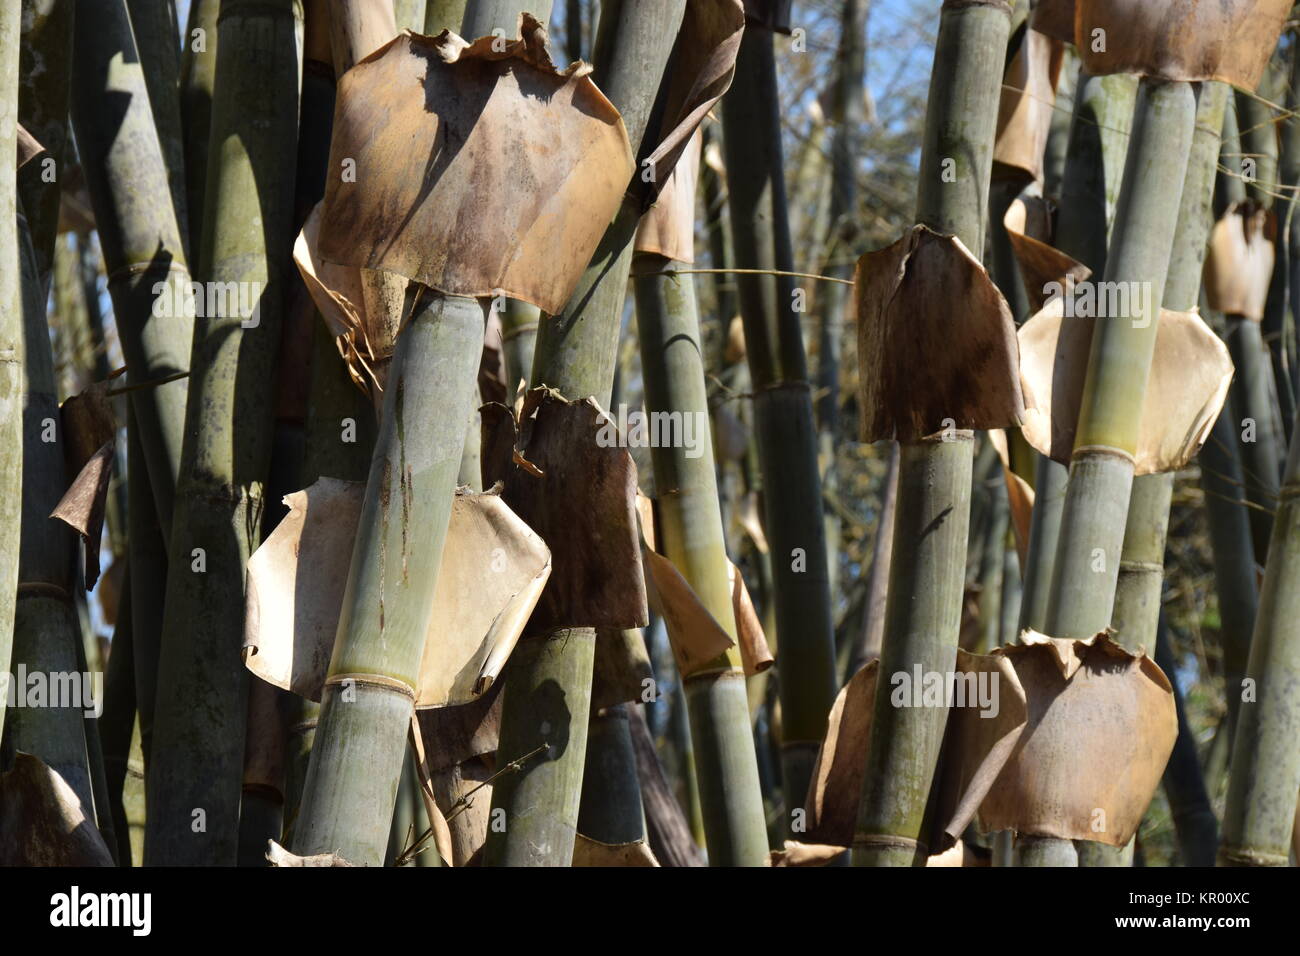 bamboo in cuba Stock Photo